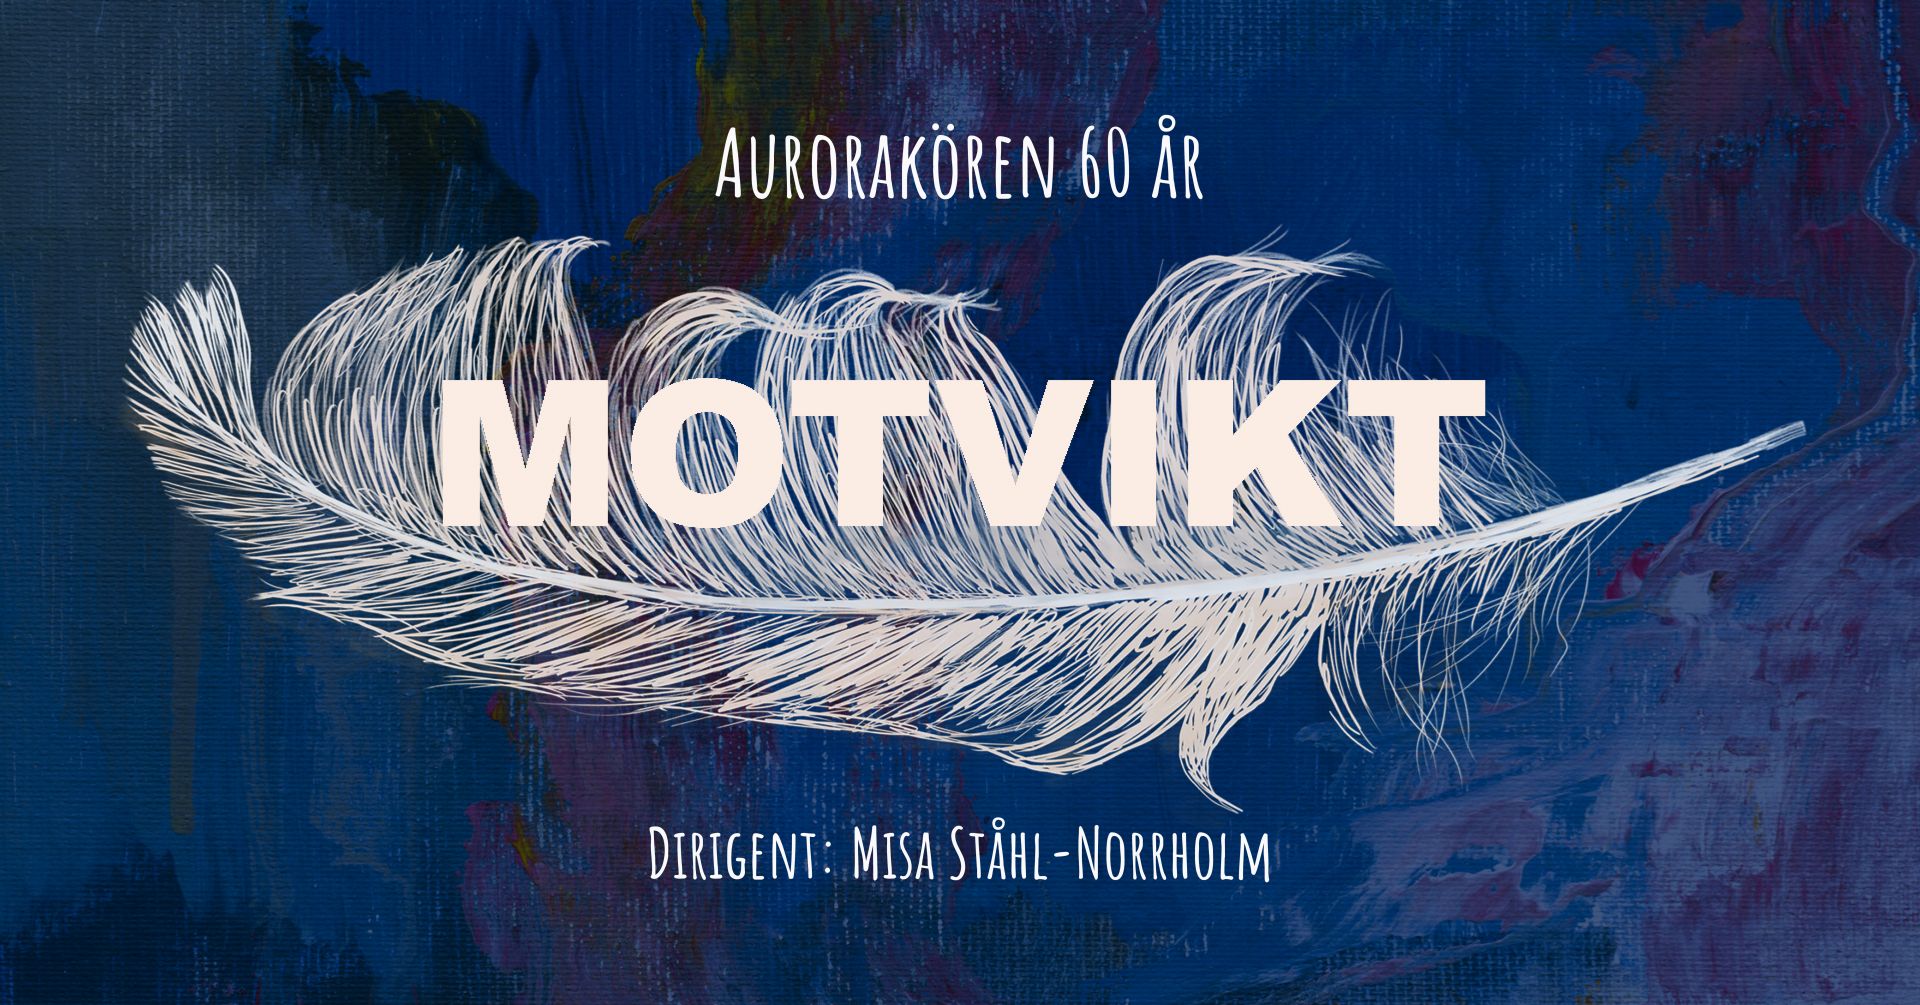 Affischbild: Motvikt – Aurorakören 60 år.